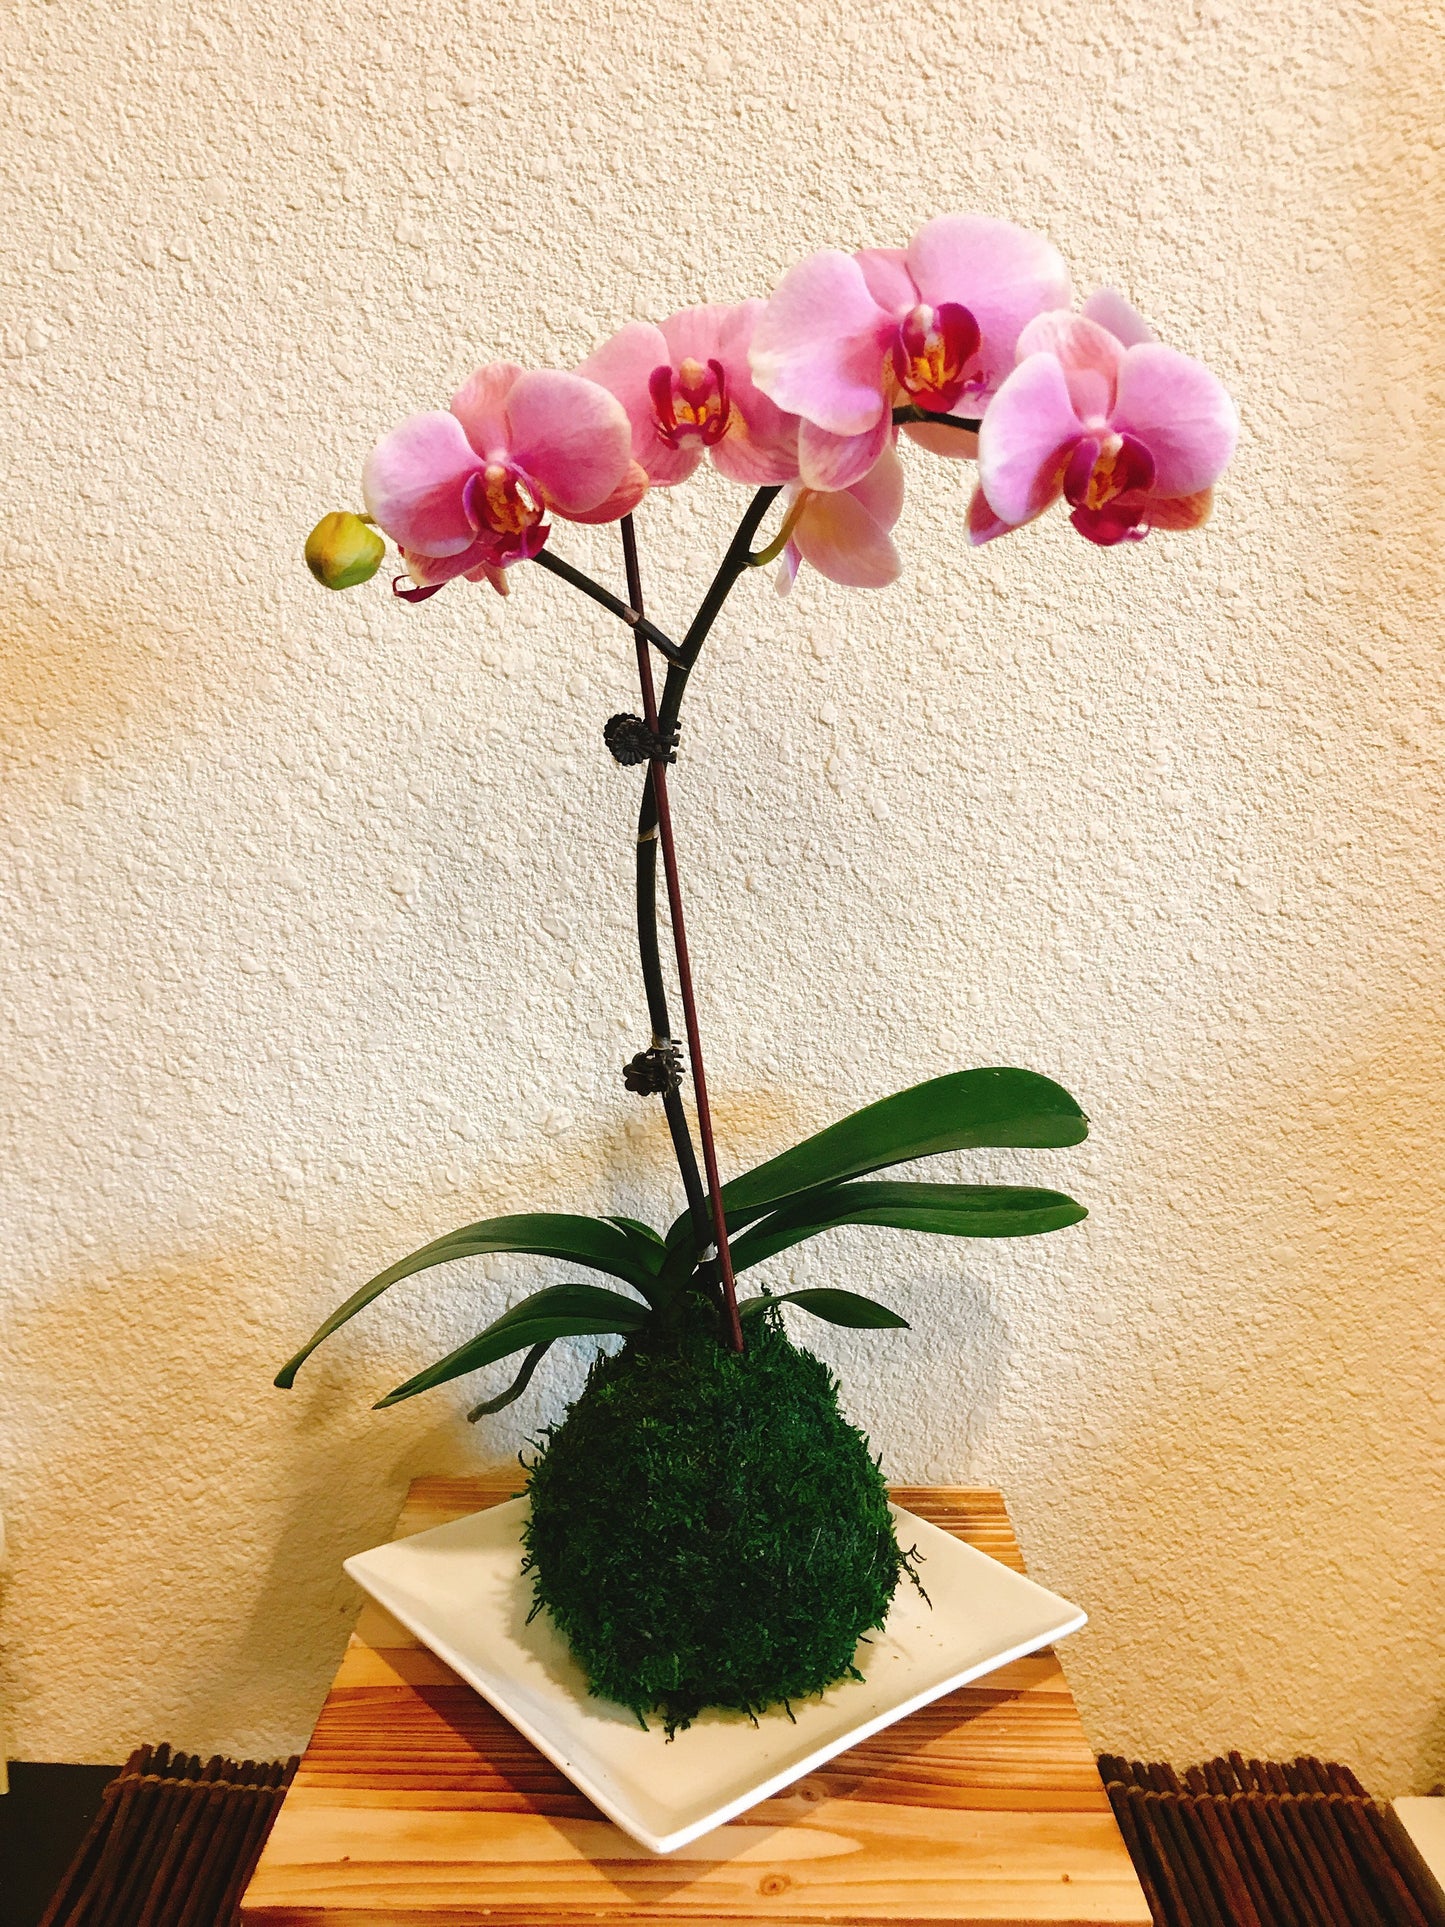 Kokedama - Moss ball with beautiful white-pink orchid